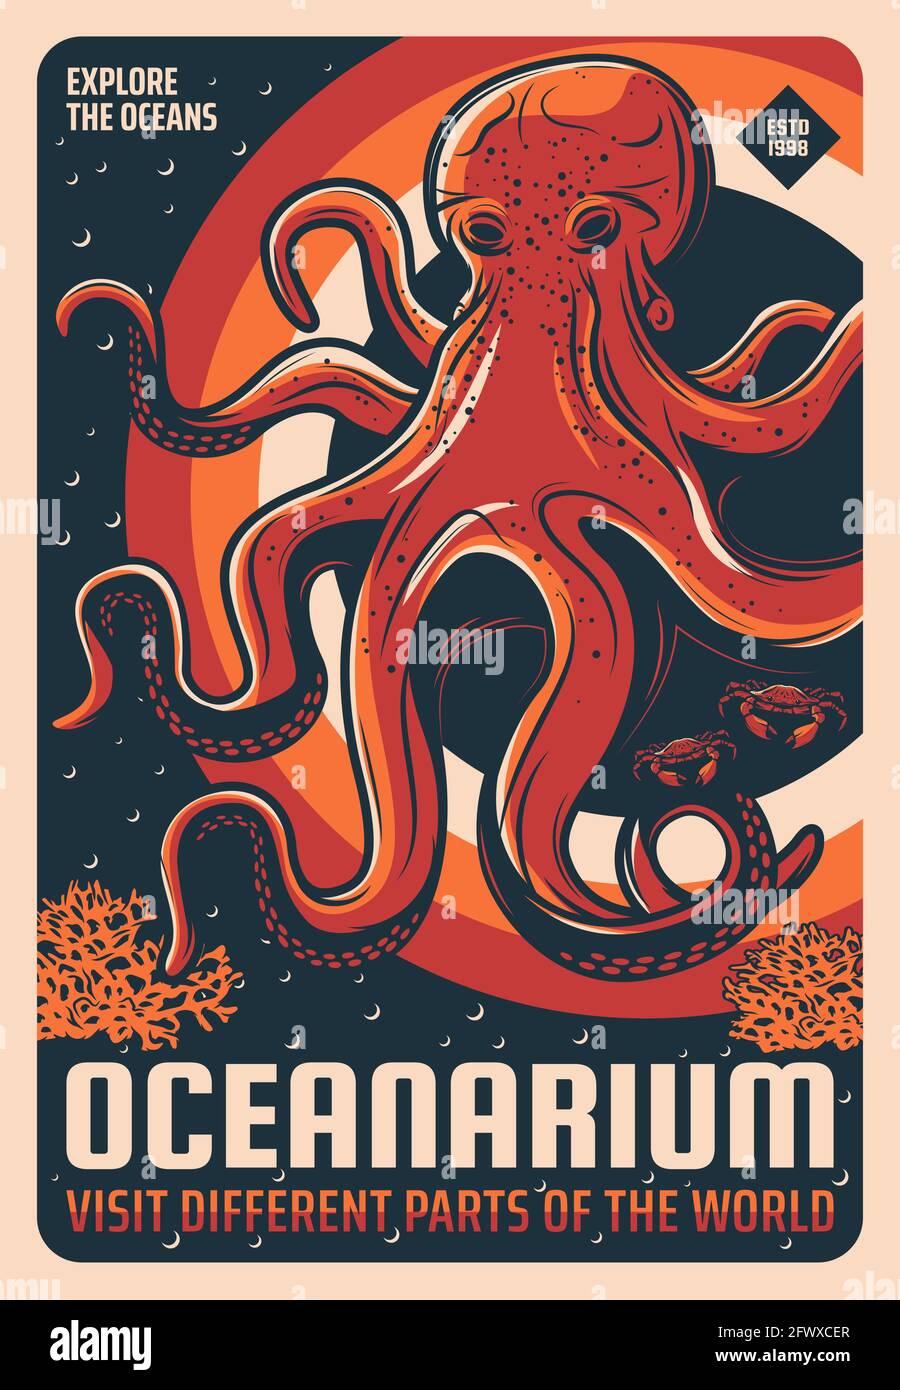 Ozeanarium Aquarium Riesen pazifik Oktopus retro Poster. Skizzenvektor Meereskrake, Steinkrabben und Algen oder Korallenriffe. Meerestiere, tropisch Stock Vektor